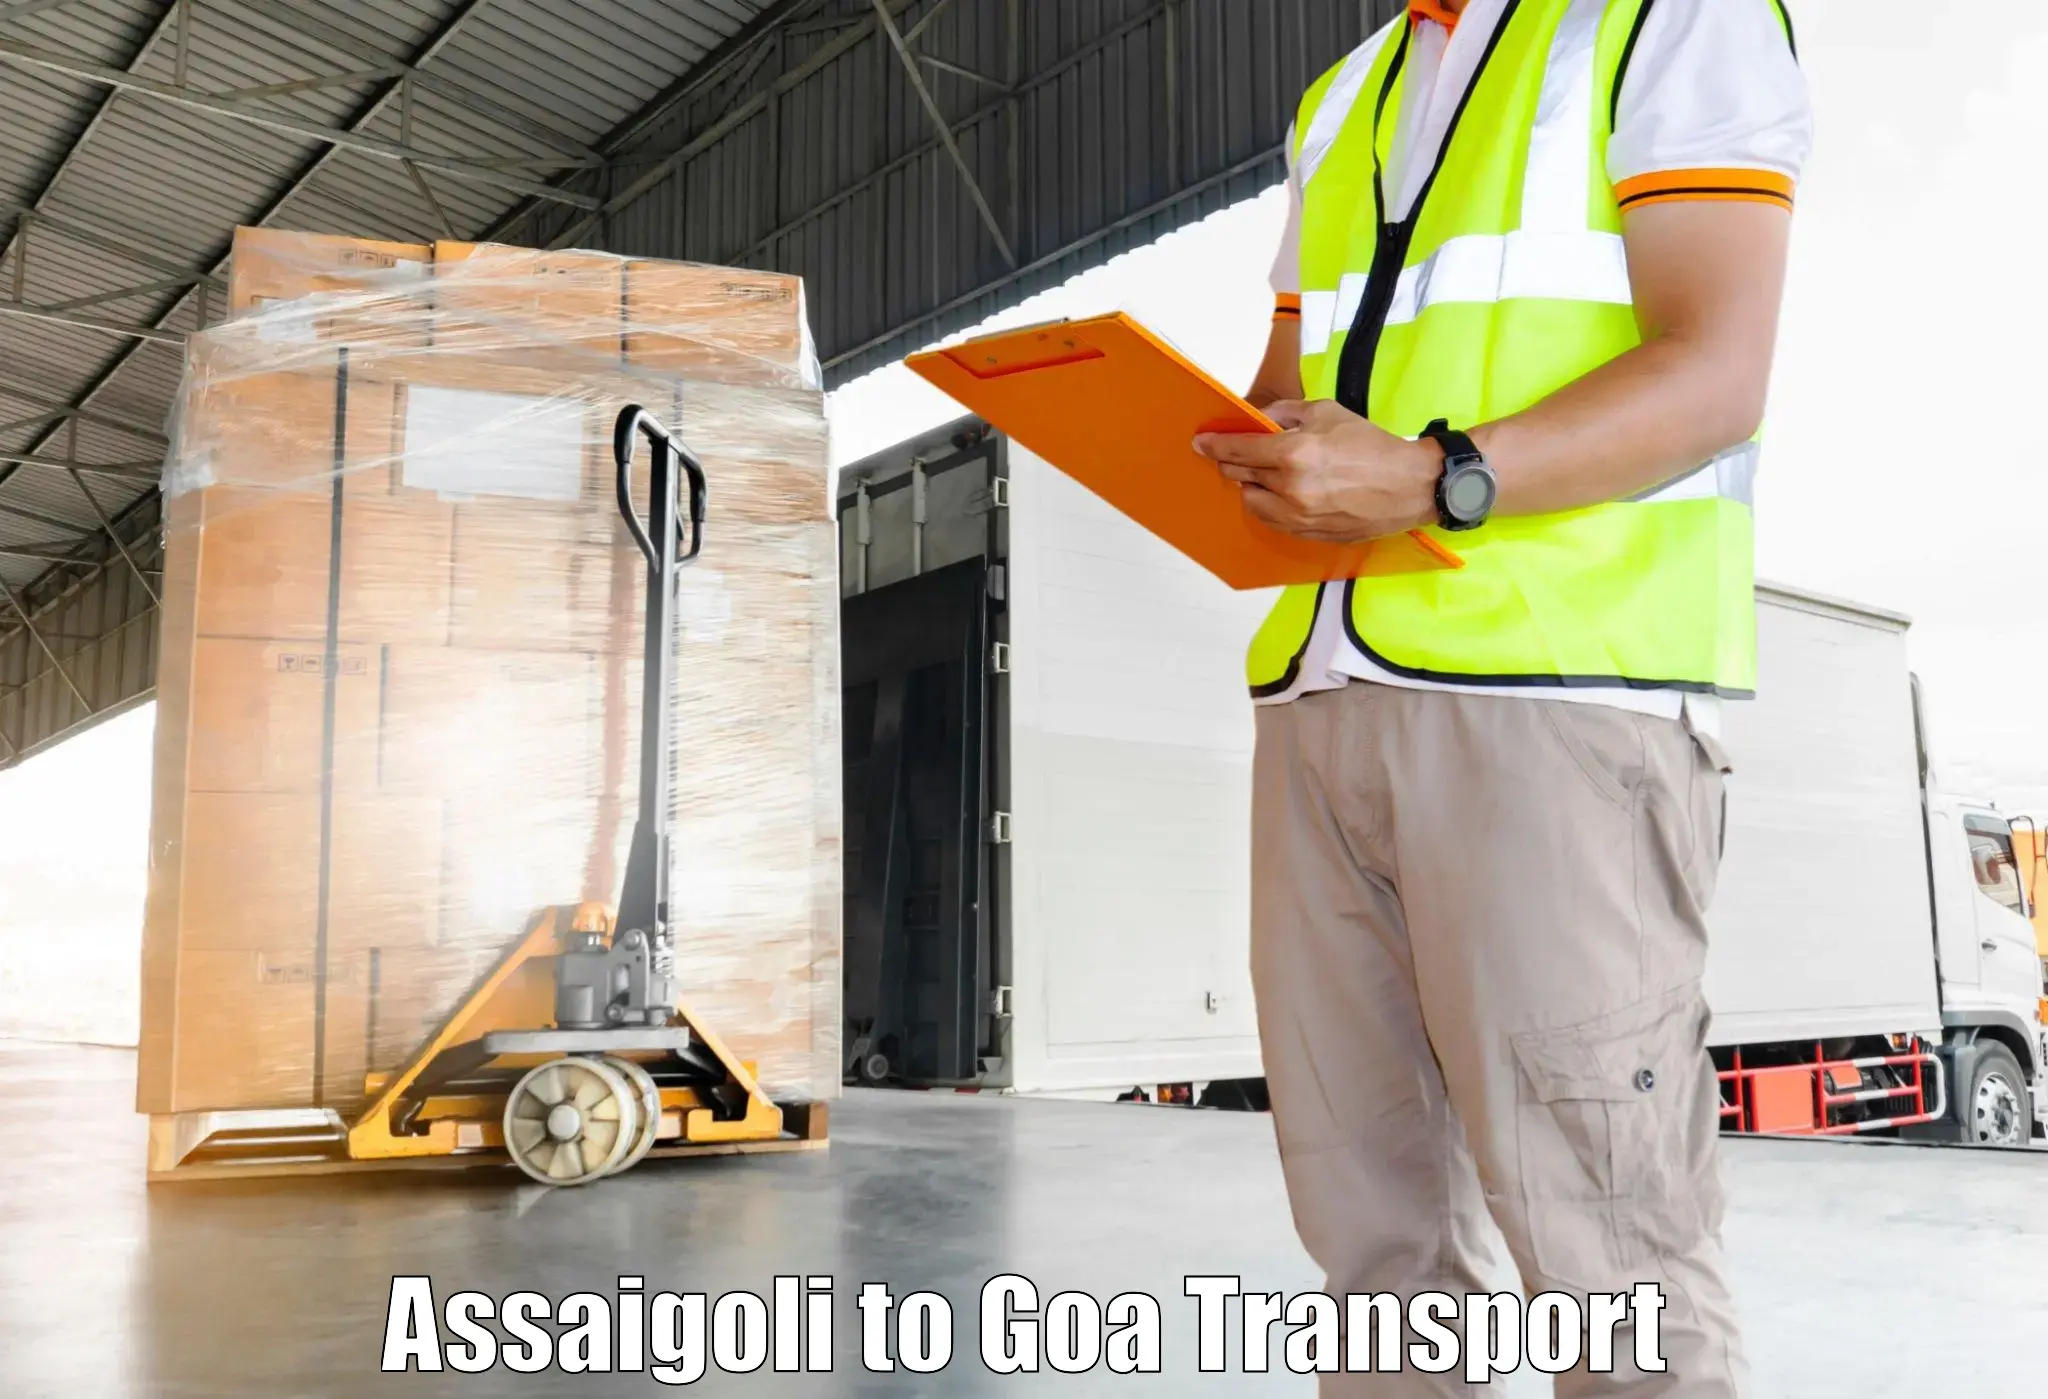 Two wheeler transport services Assaigoli to Vasco da Gama